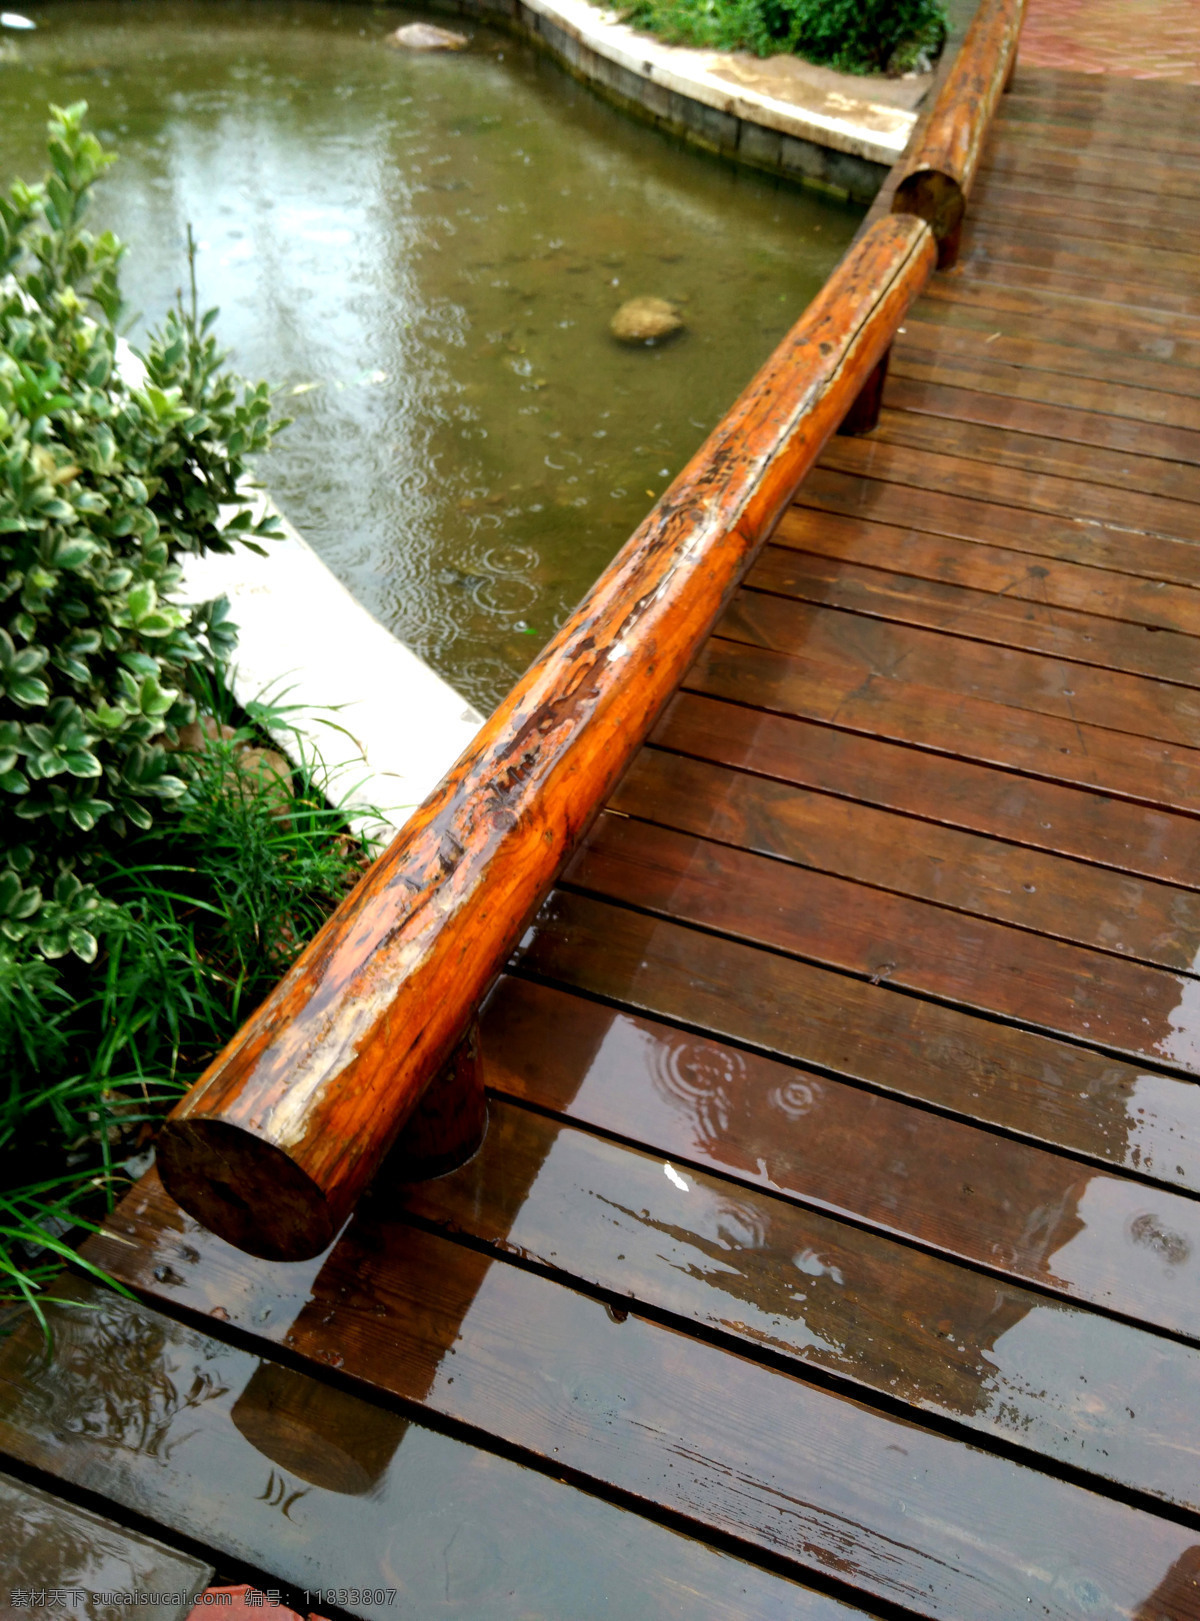 雨后 社区 花园一角 小桥流水 小木桥 小河 木板桥 生活眼 建筑园林 园林建筑